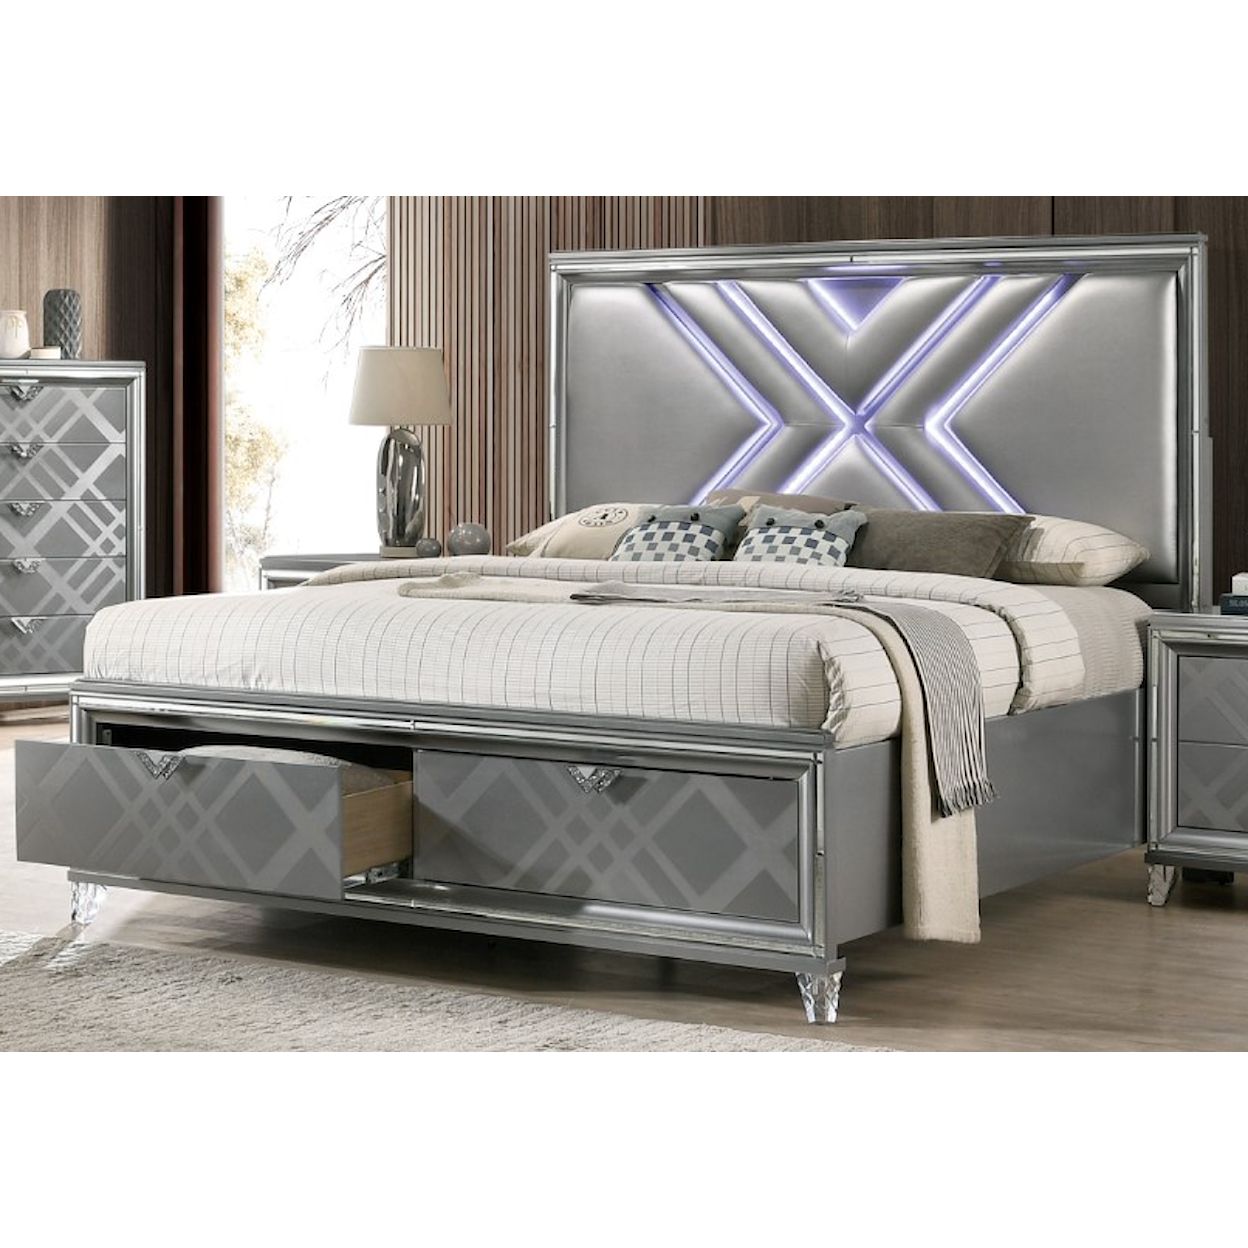 Furniture of America Emmeline King Bed